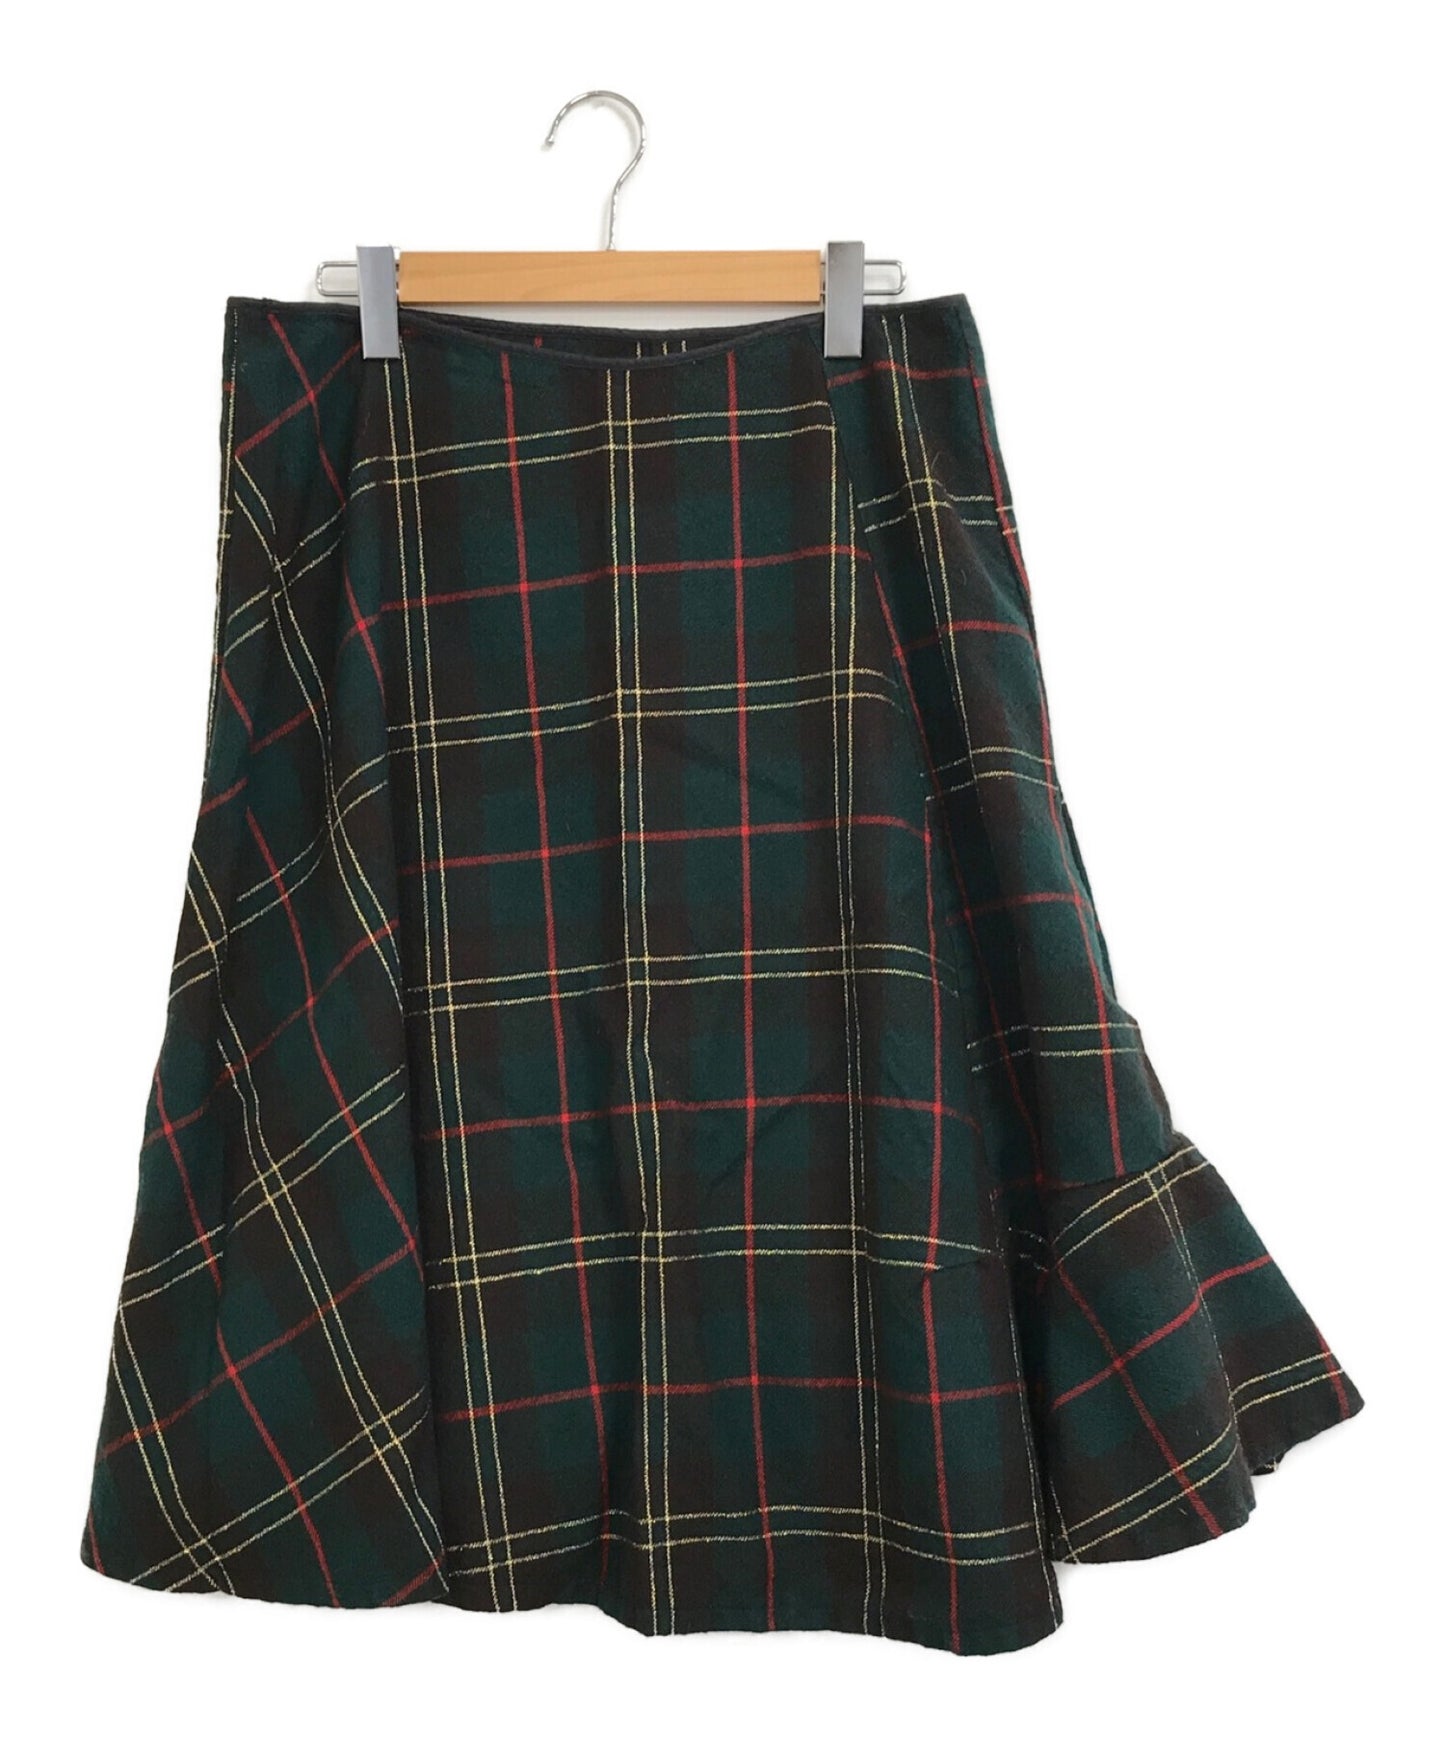 Comme des Garcons [Old] Shrunken Wool Lamé Check Skirt GS-04020M